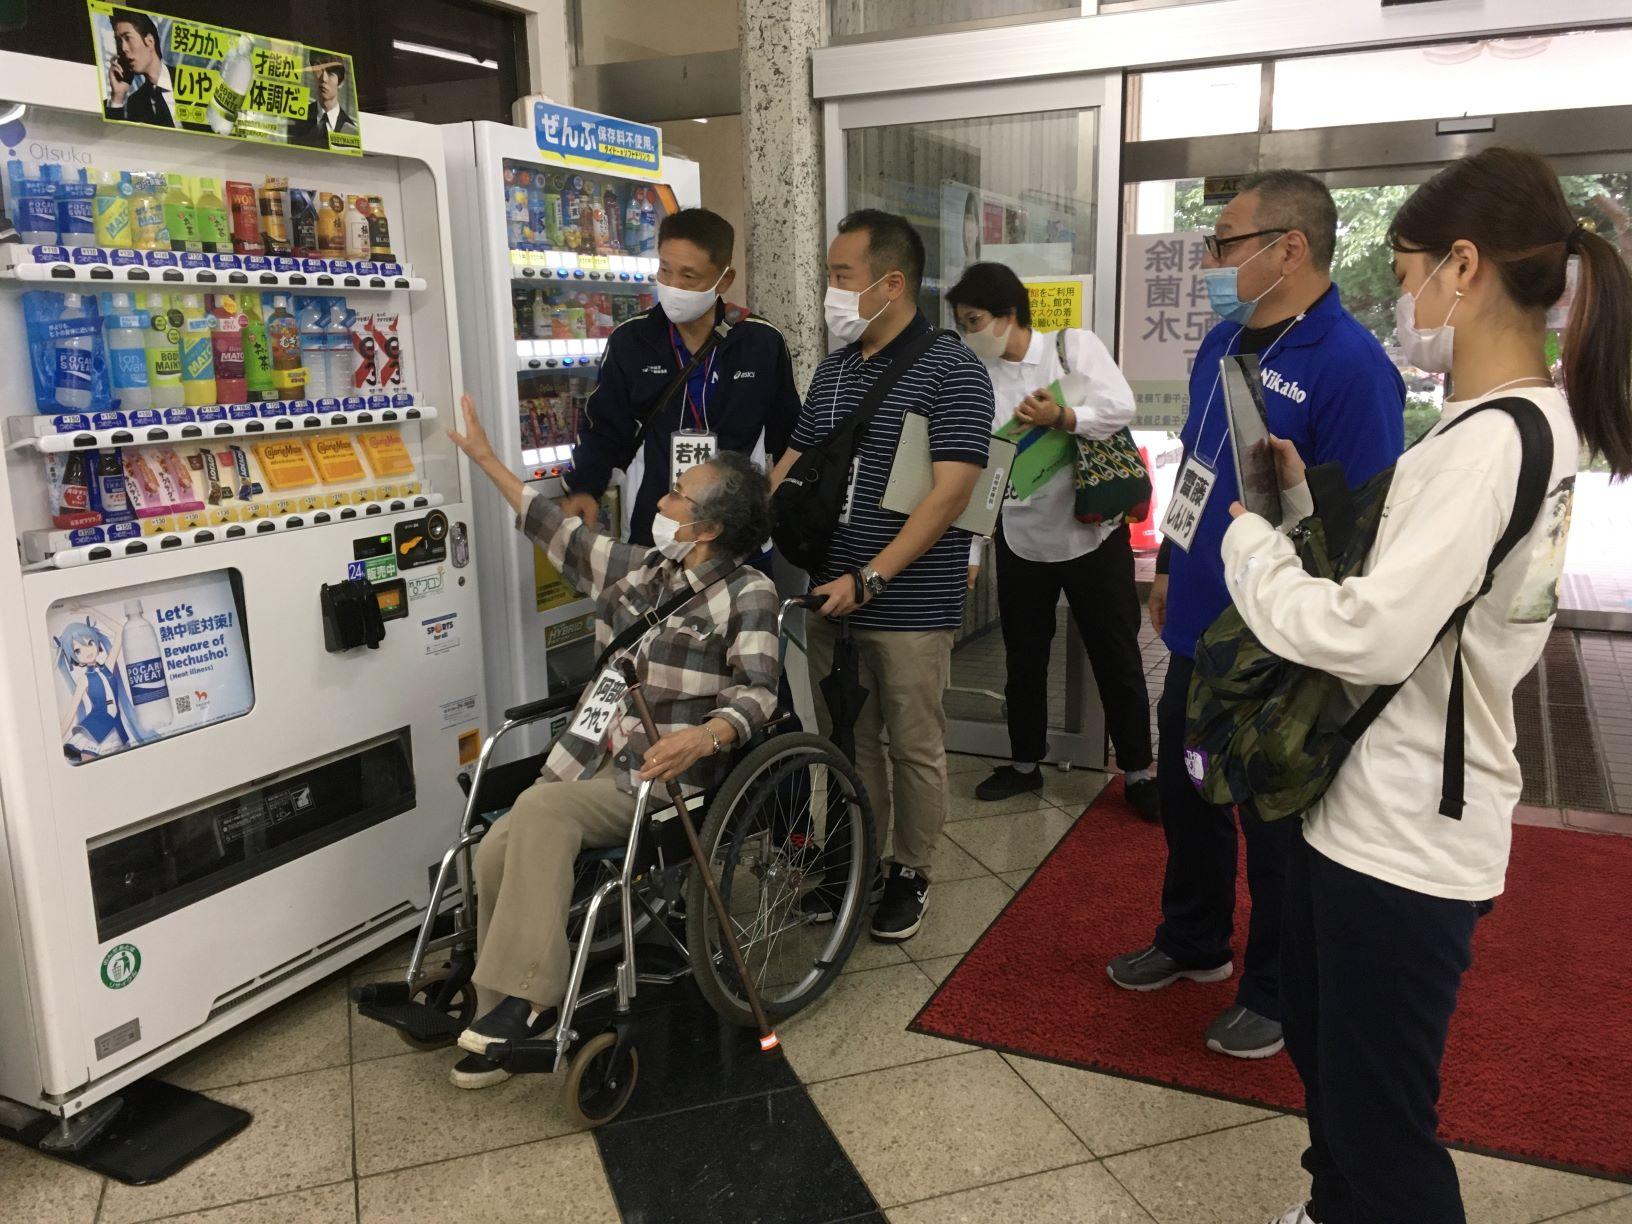 建物入口付近の自動販売機の前で、実際に車椅子に乗って自動販売機を利用する際の問題点を確認する参加者たちの写真